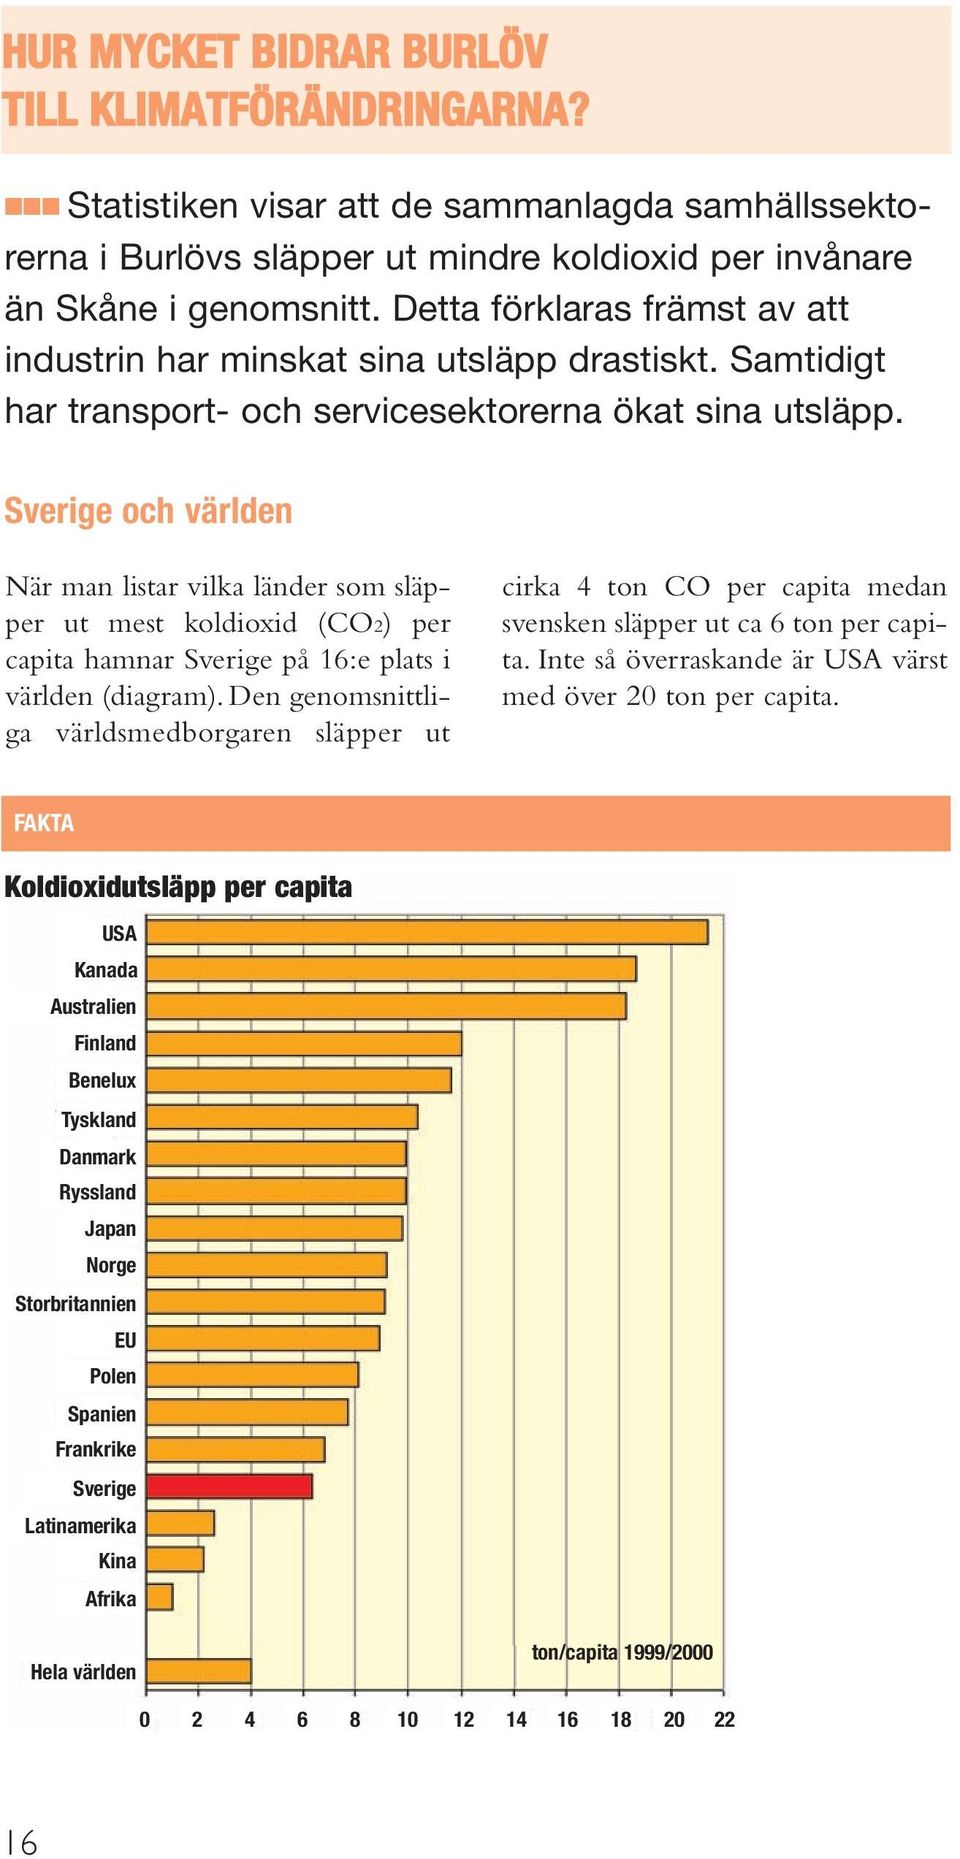 Sverige och världen När man listar vilka länder som släpper ut mest koldioxid (CO2) per capita hamnar Sverige på 16:e plats i världen (diagram).